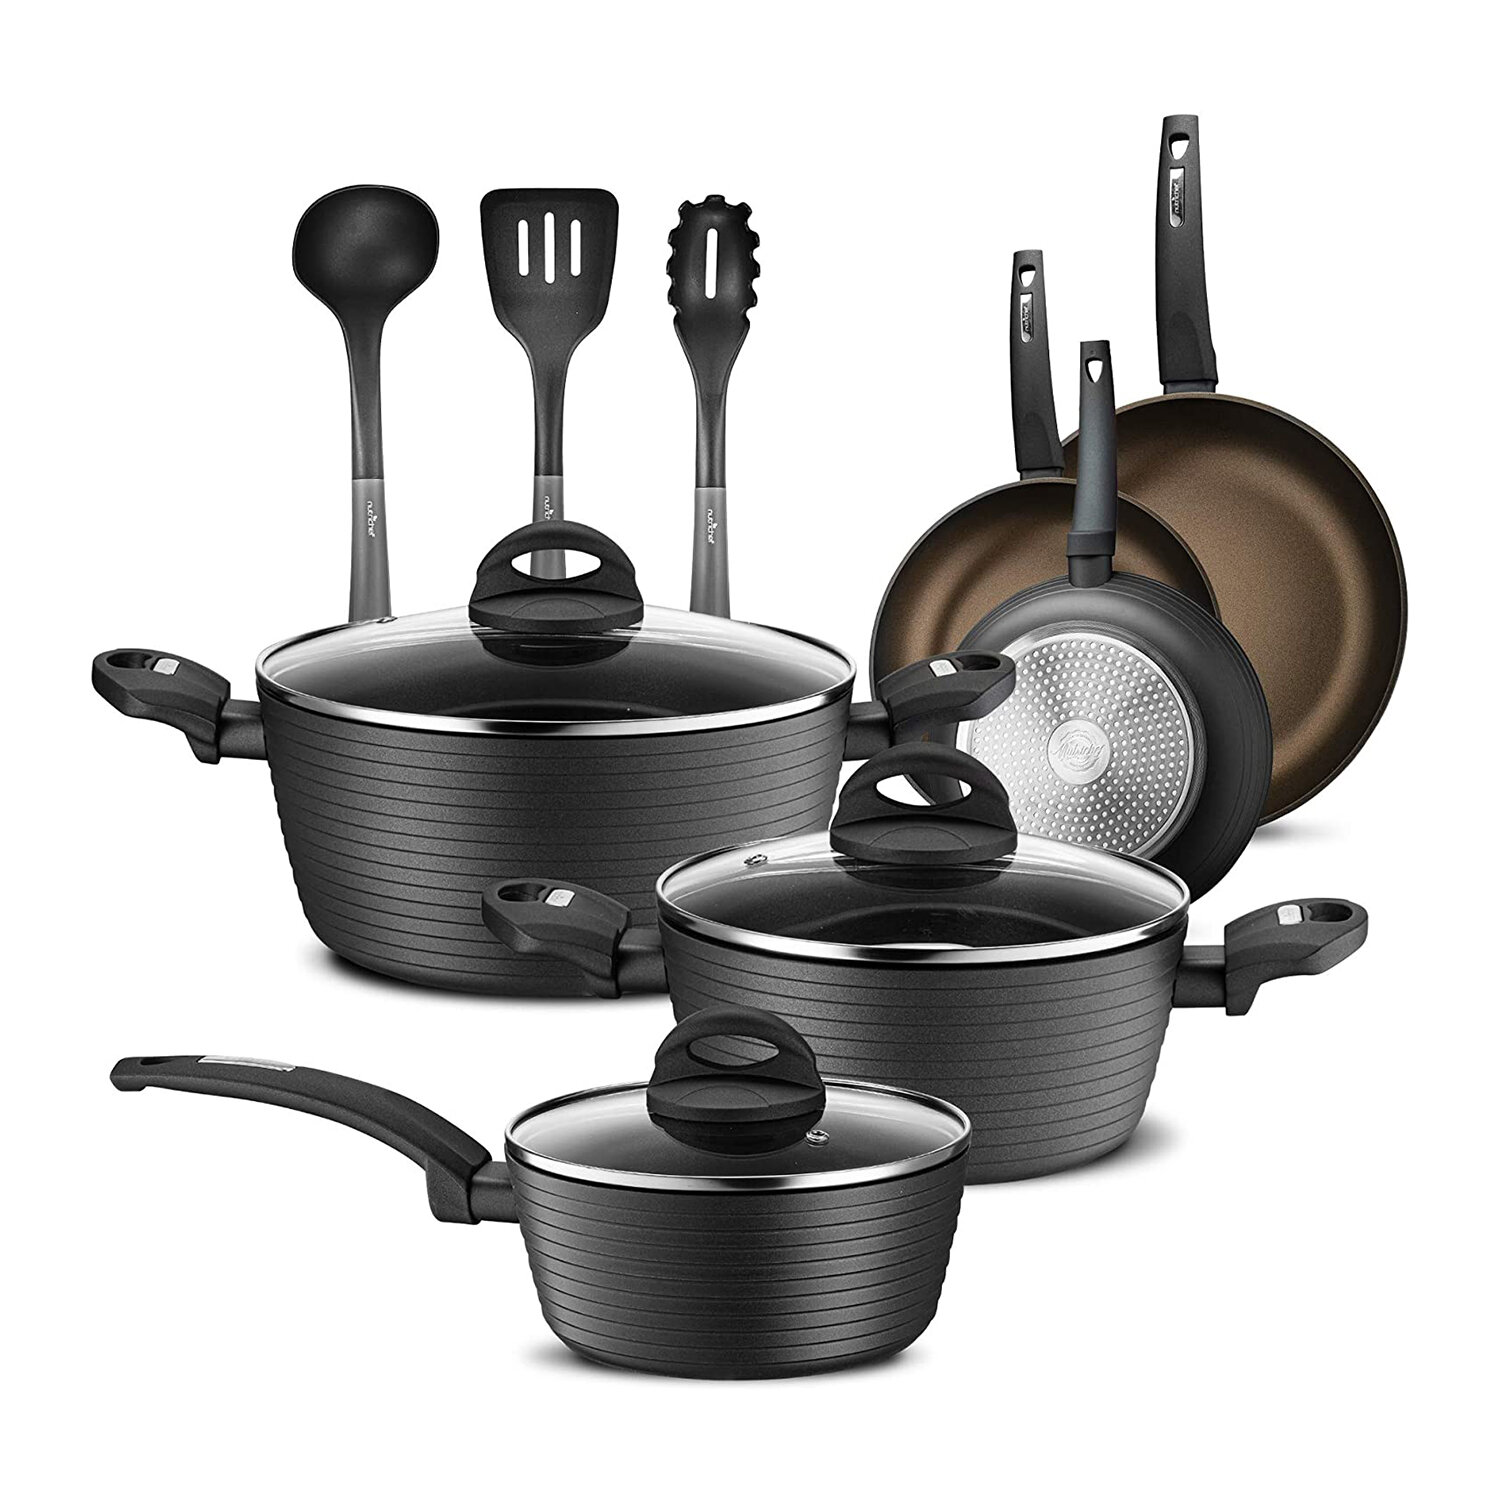 https://assets.wfcdn.com/im/30937499/compr-r85/1919/191993065/12-piece-non-stick-aluminum-cookware-set.jpg